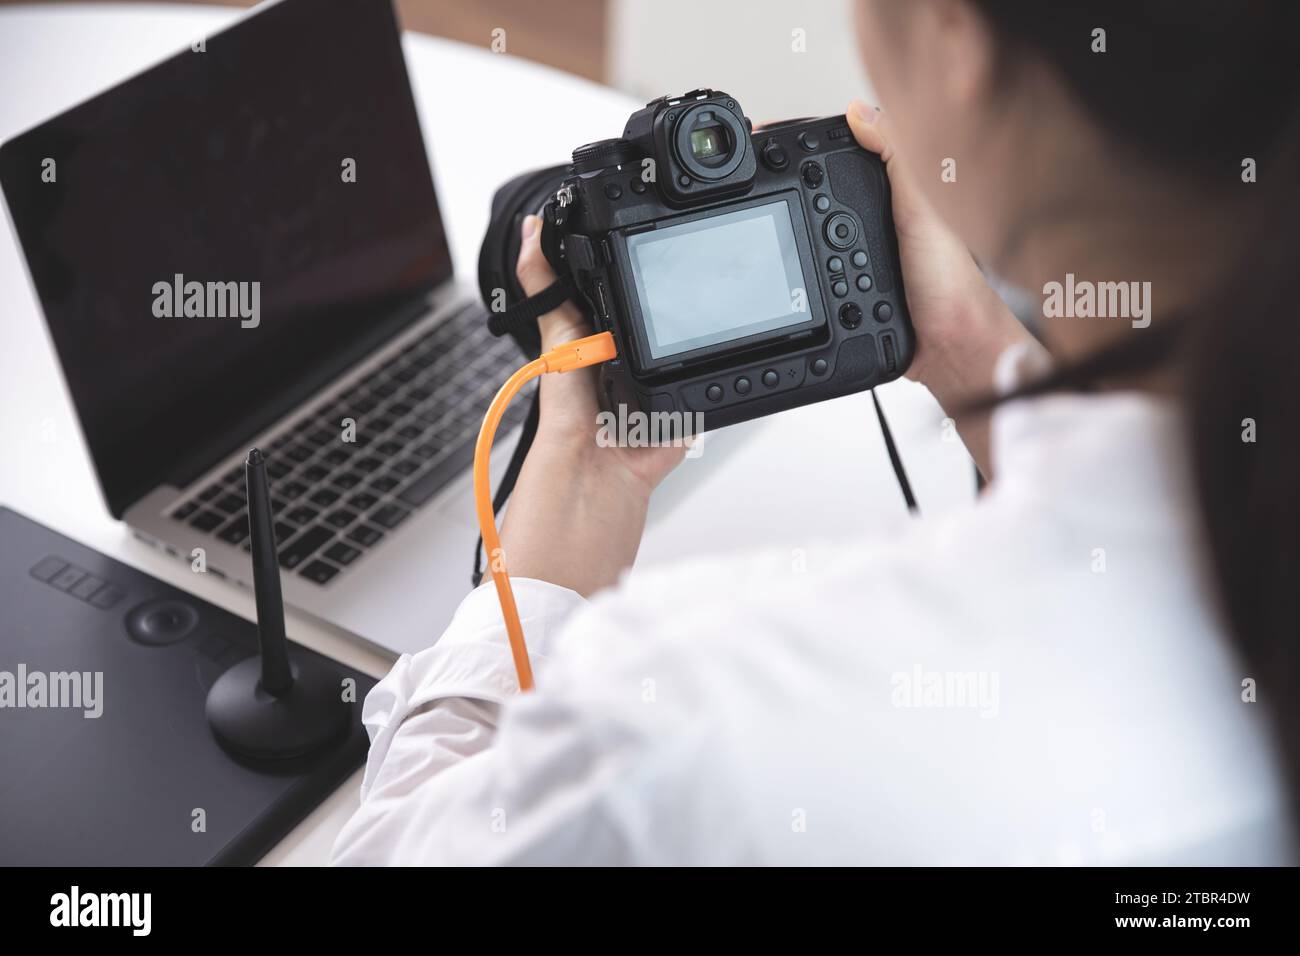 Fotografin, Bloggerin, die mit ihrer Kamera aufgenommene Fotos mit einem Laptop überprüft Stockfoto